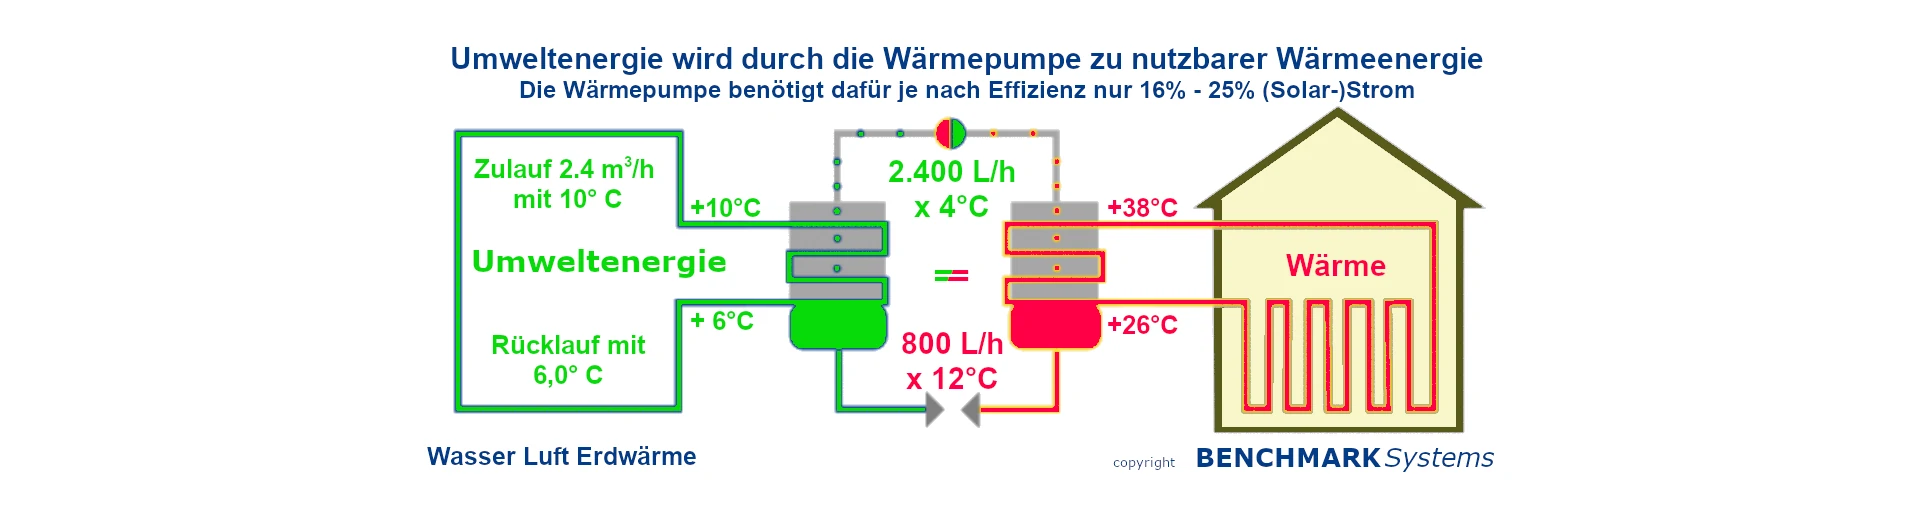 Wärmepumpe Umweltenergie Solaranlage Prinzip CO2 frei von KfW BAFA BEG Landes Förderung Berlin